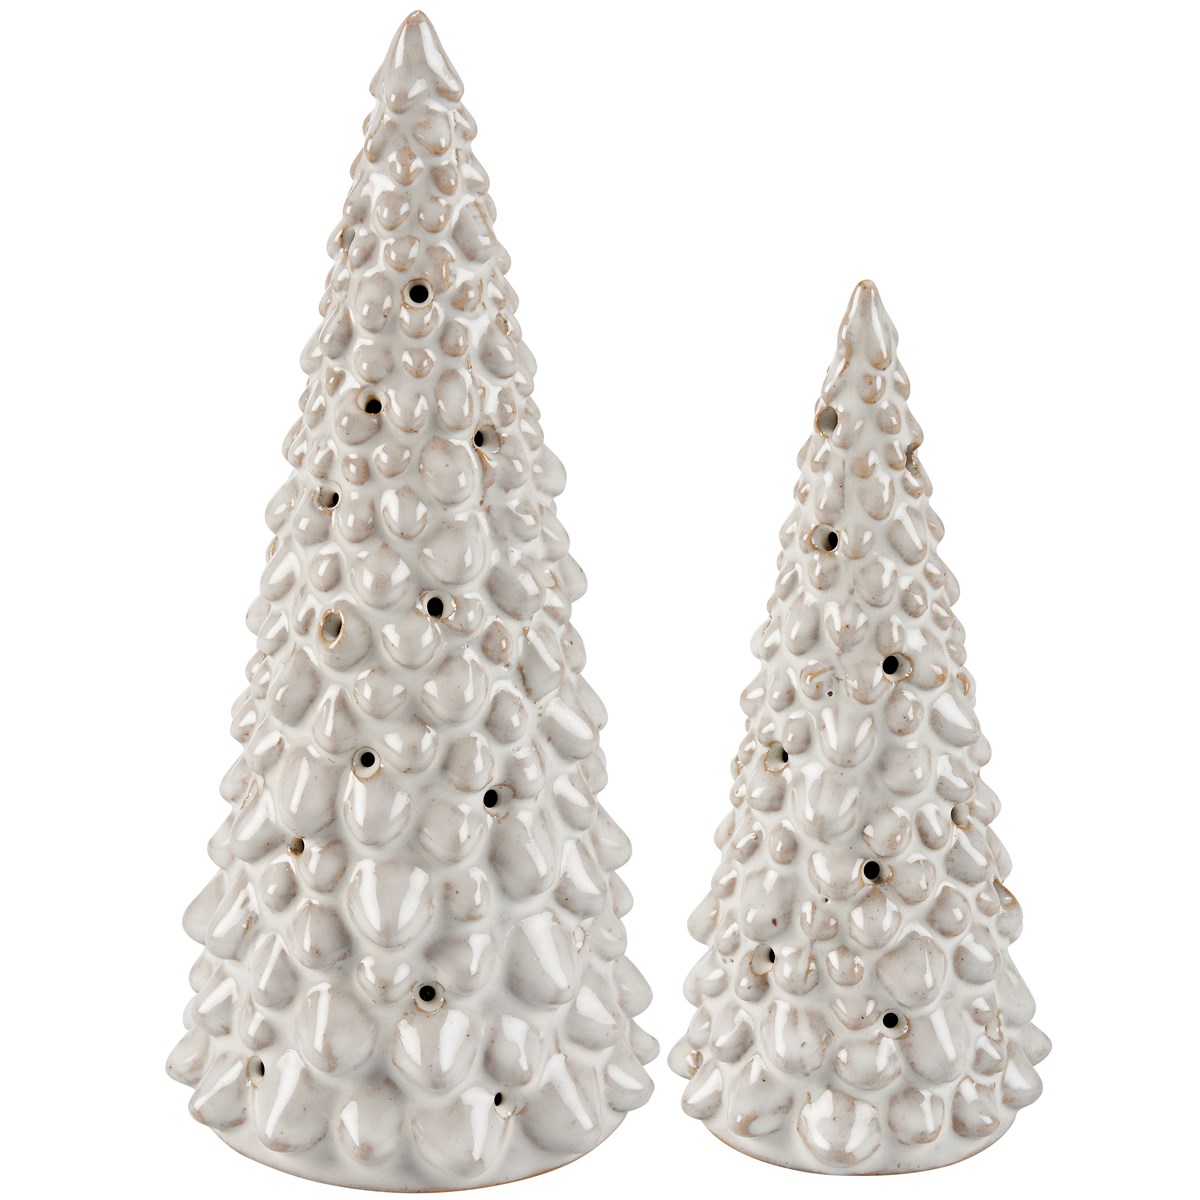 Lighted Christmas Tree Set - Ceramic, Lights, Plastic